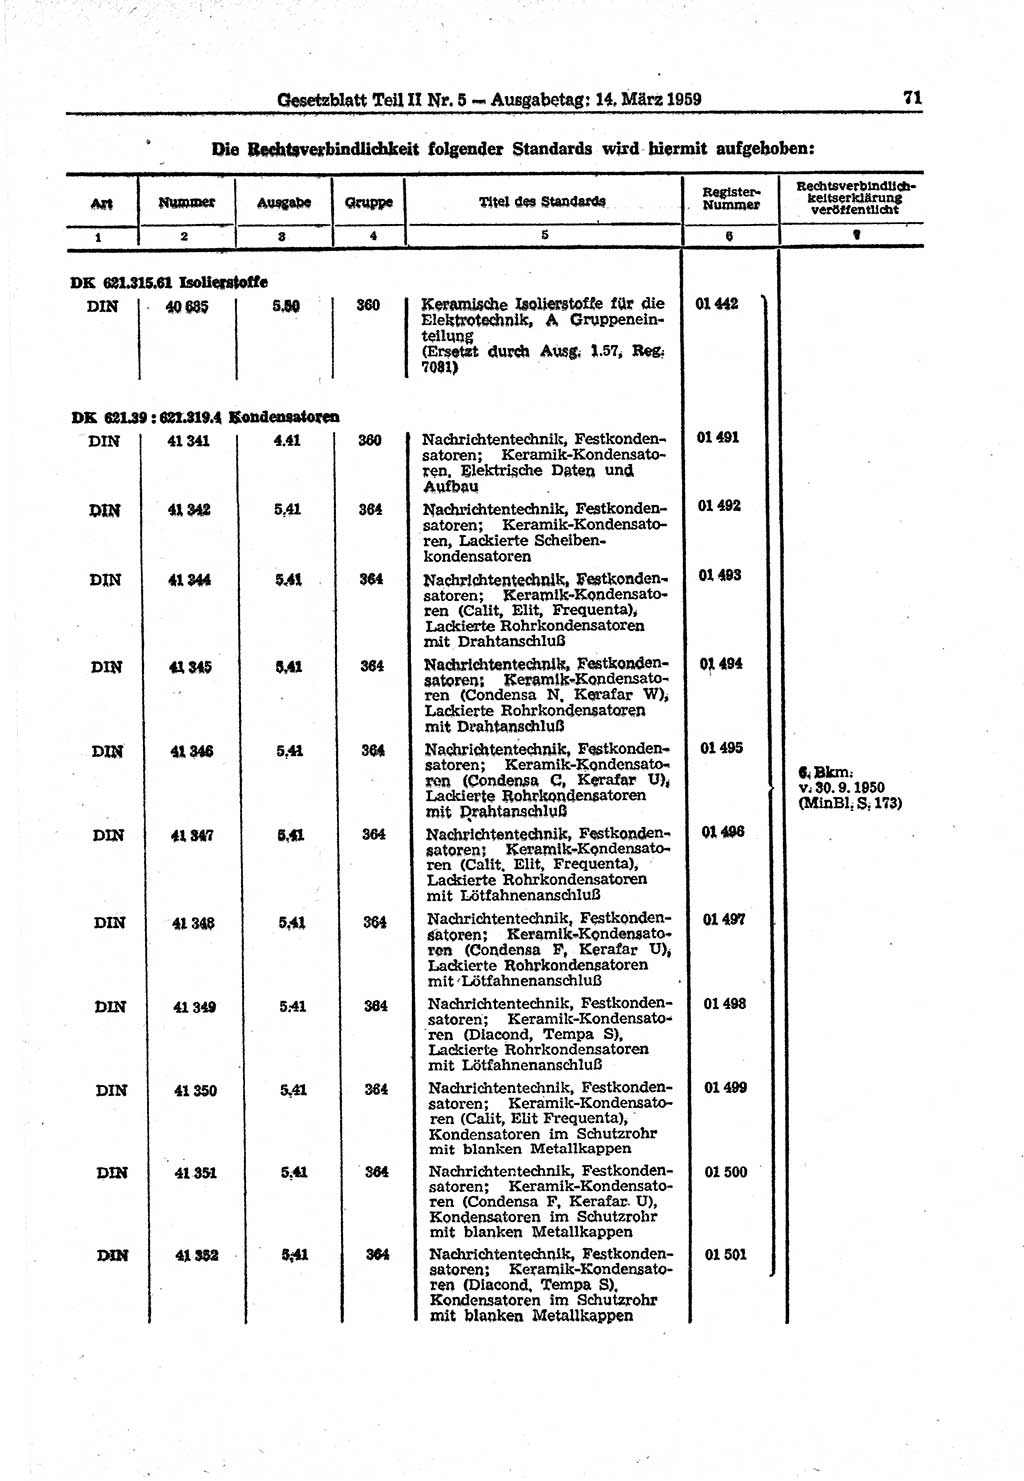 Gesetzblatt (GBl.) der Deutschen Demokratischen Republik (DDR) Teil ⅠⅠ 1959, Seite 71 (GBl. DDR ⅠⅠ 1959, S. 71)